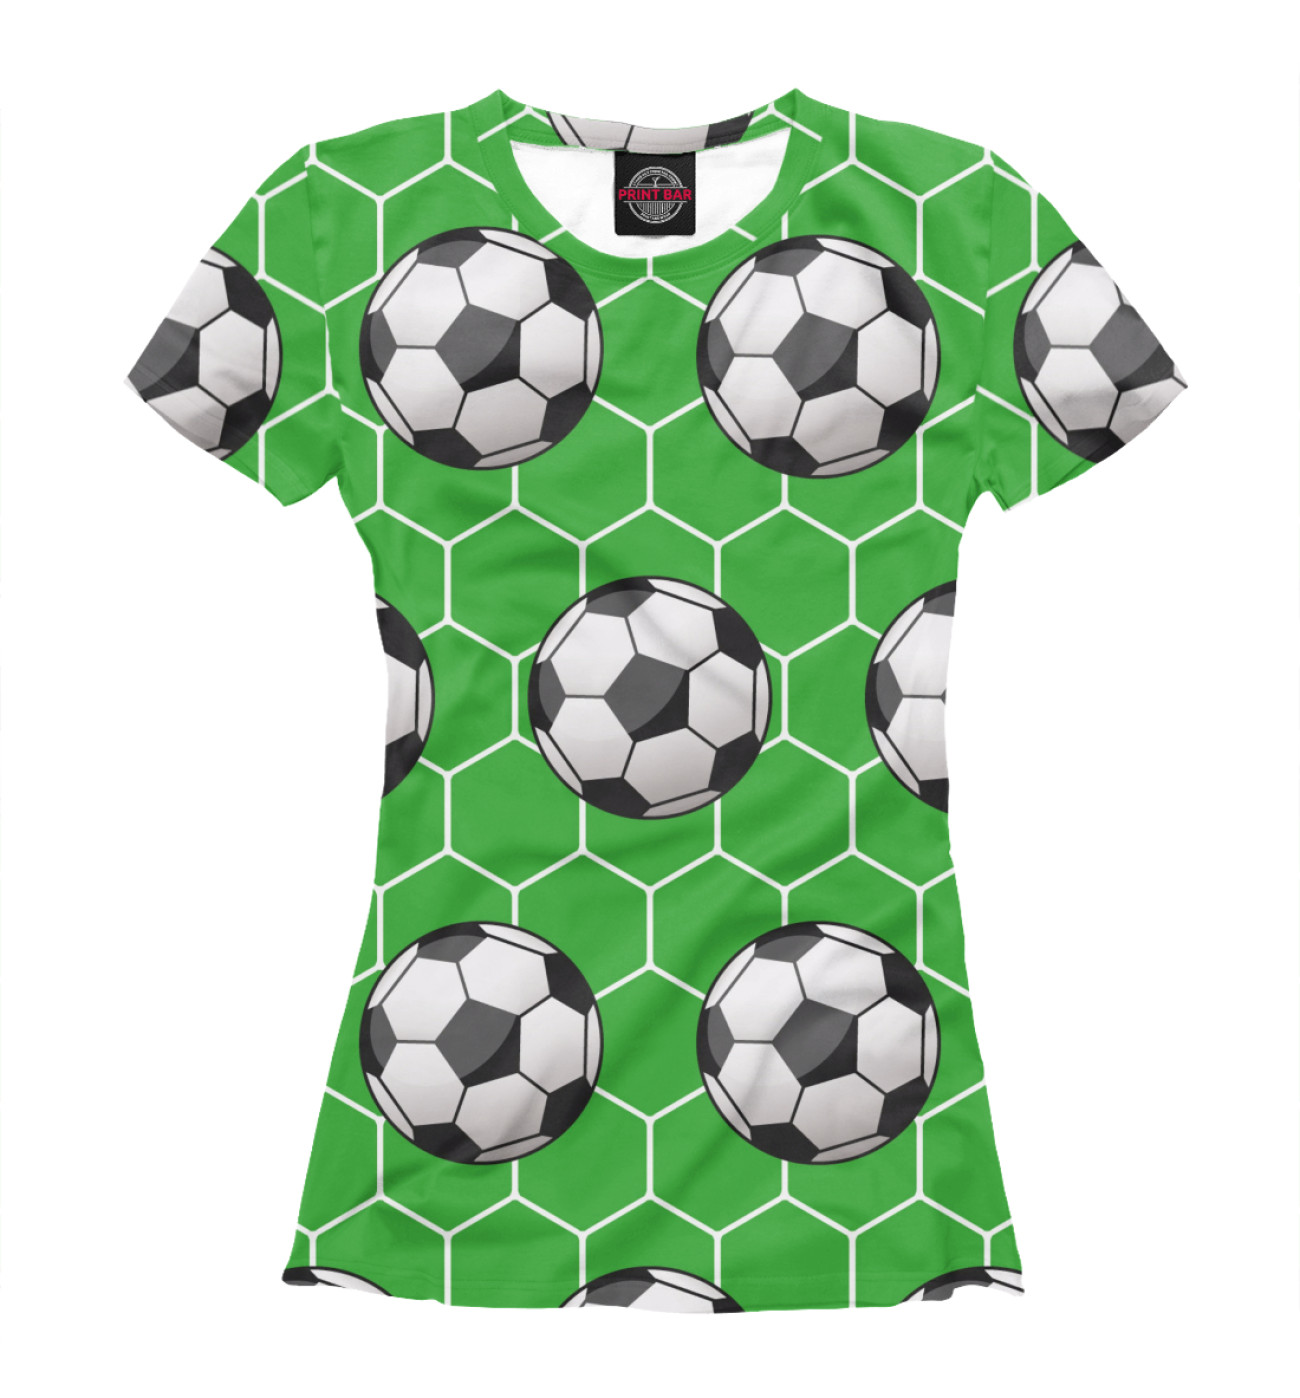 Женская Футболка Футбольные мячи на зеленом фоне, артикул: FTO-419156-fut-1